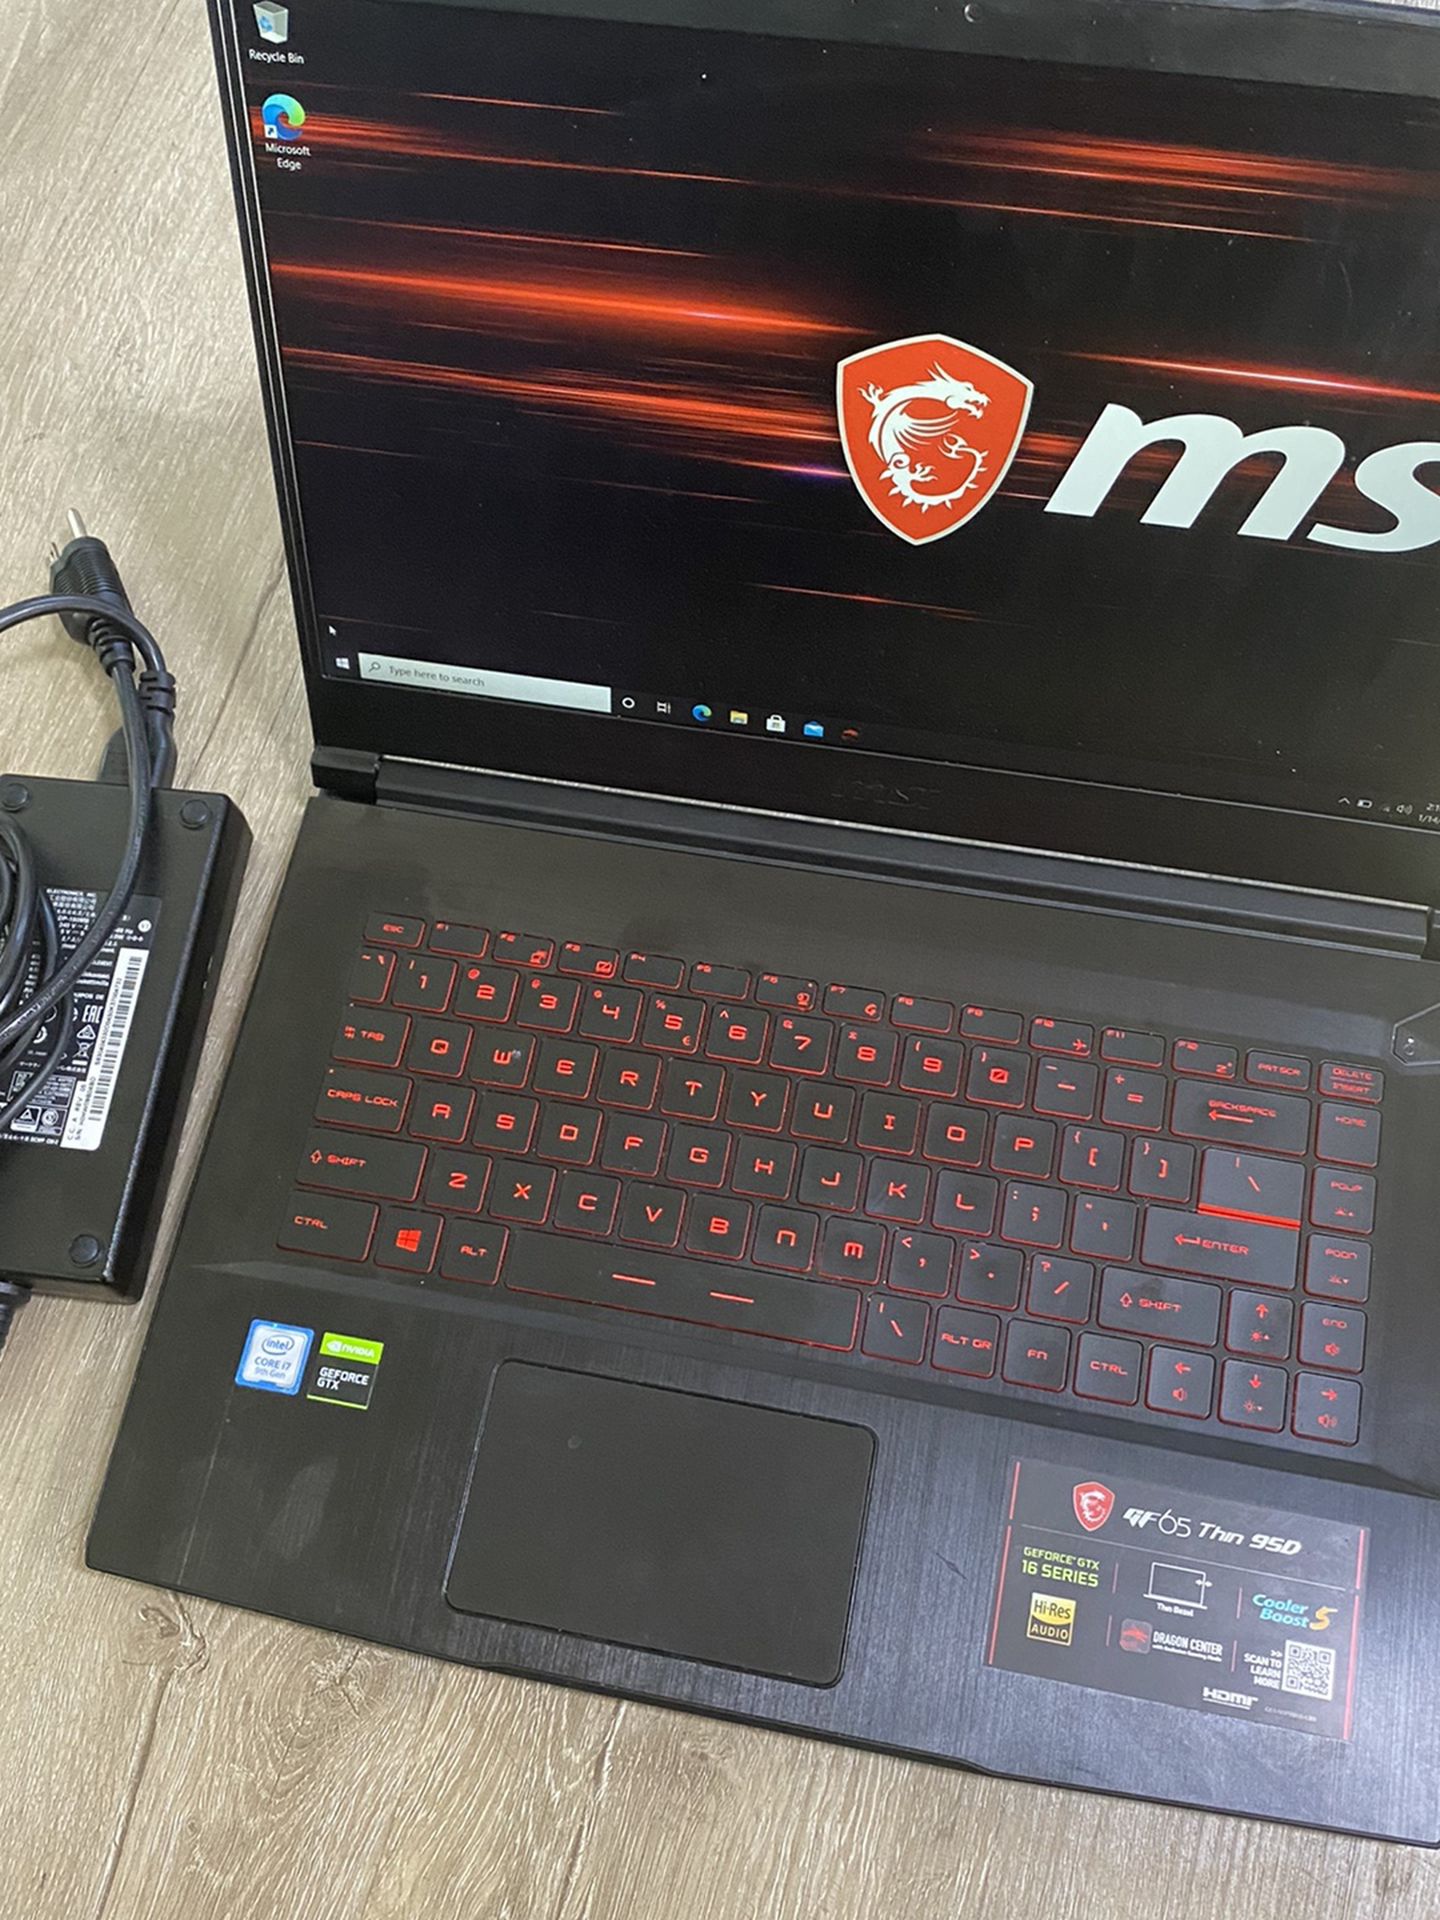 MSI GF65 Gaming Laptop